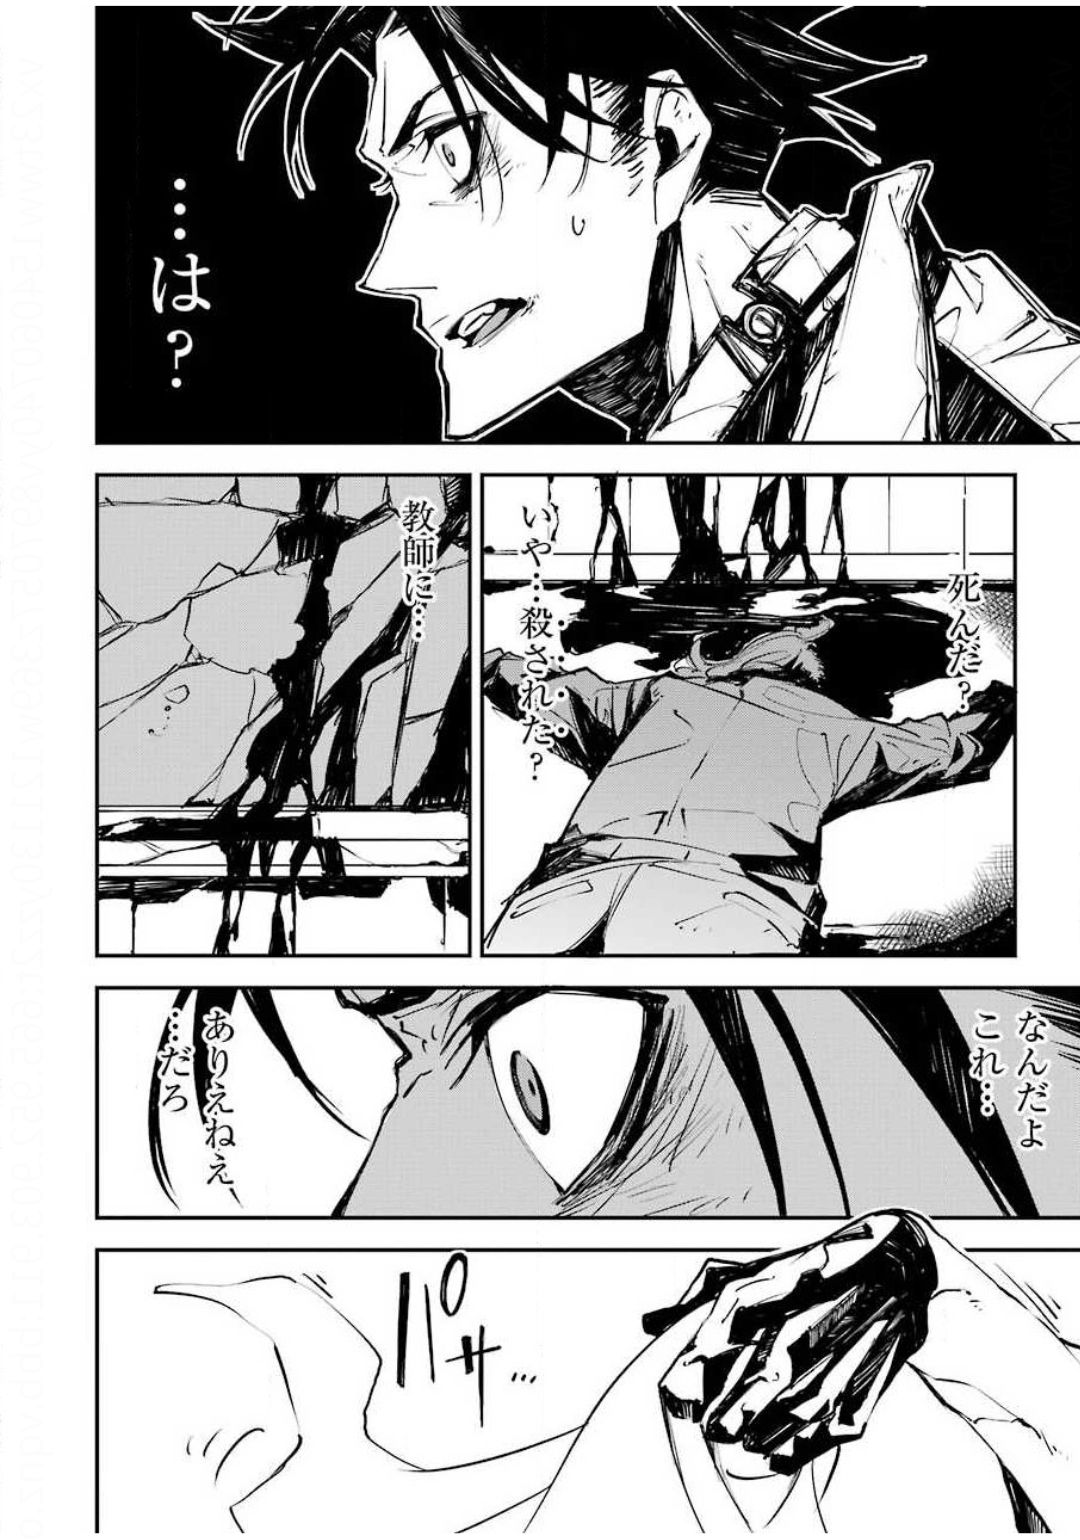 マーダーロック-殺人鬼の凶室-; Mādārokku – satsujinki no kyō-shitsu -; Murder Rock-The Murderer’s Chamber- 第1話 - Page 50